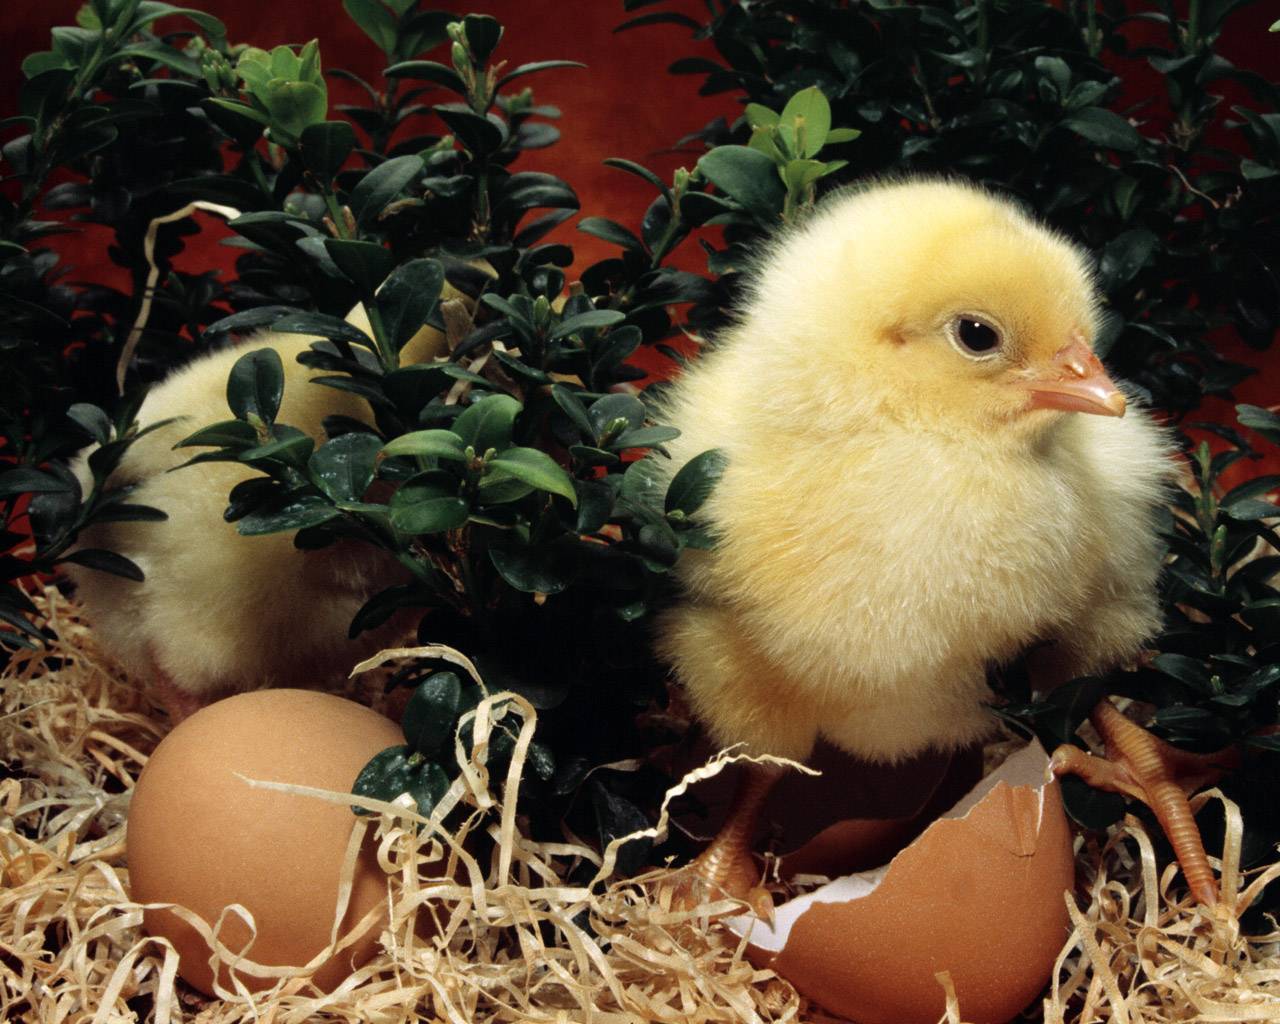 Выращивание цыплят: птицеводство от а до я. пошаговая инструкция по уходу и содержанию цыплят в домашних условиях (видео и 110 фото)